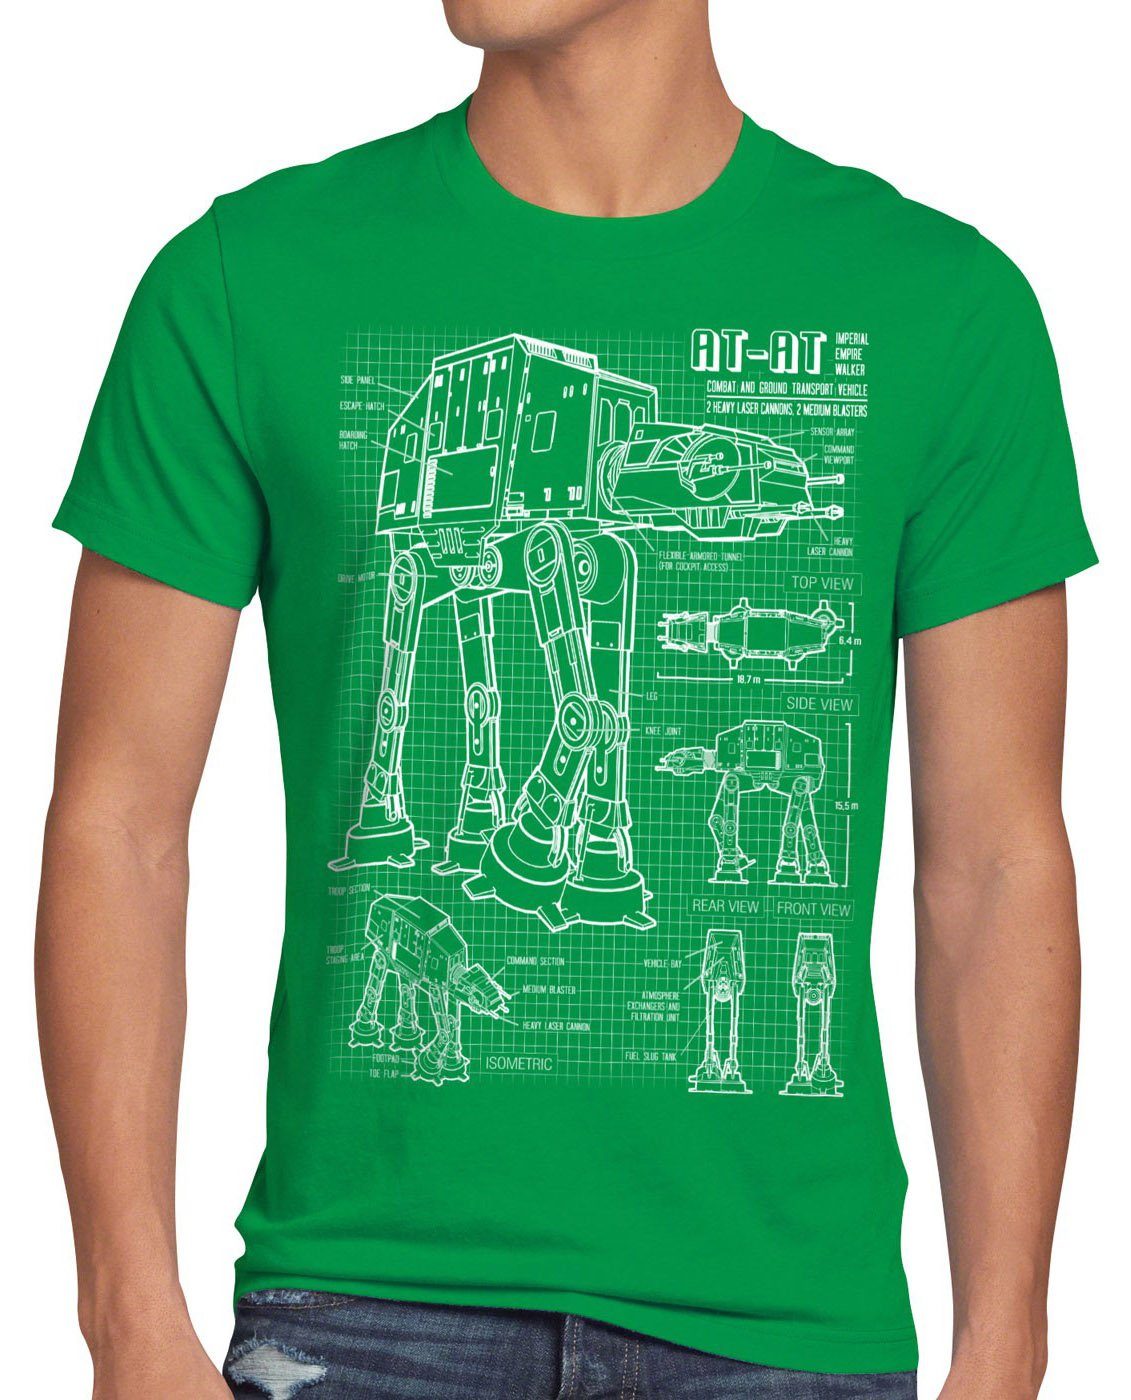 T-Shirt krieg AT-AT wars blaupause Herren style3 der grün vader walker sterne Print-Shirt imperium star